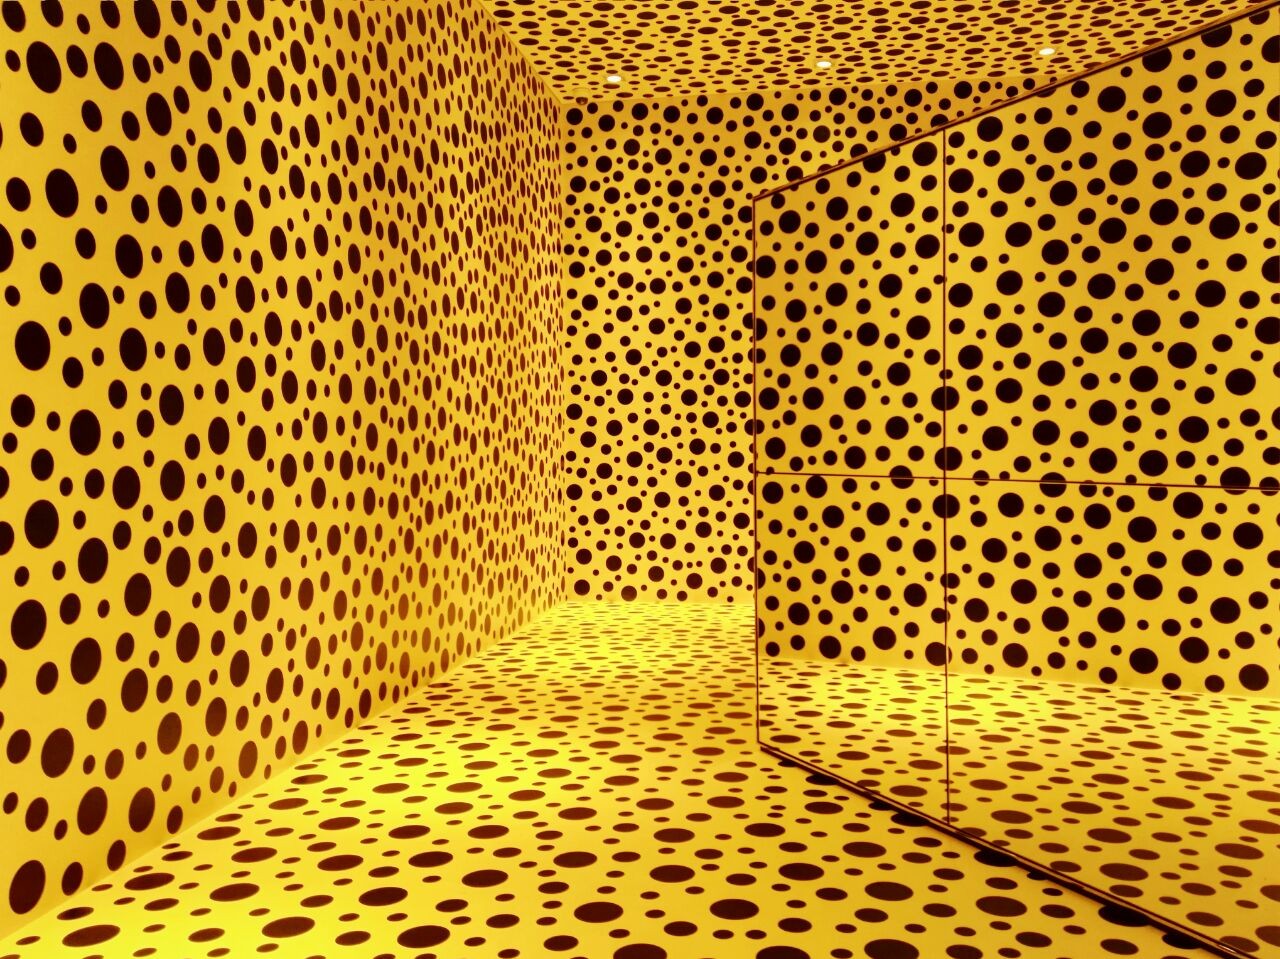 Yayoi Kusama: Her world of polka dots - Art & Culture - The Jakarta Post